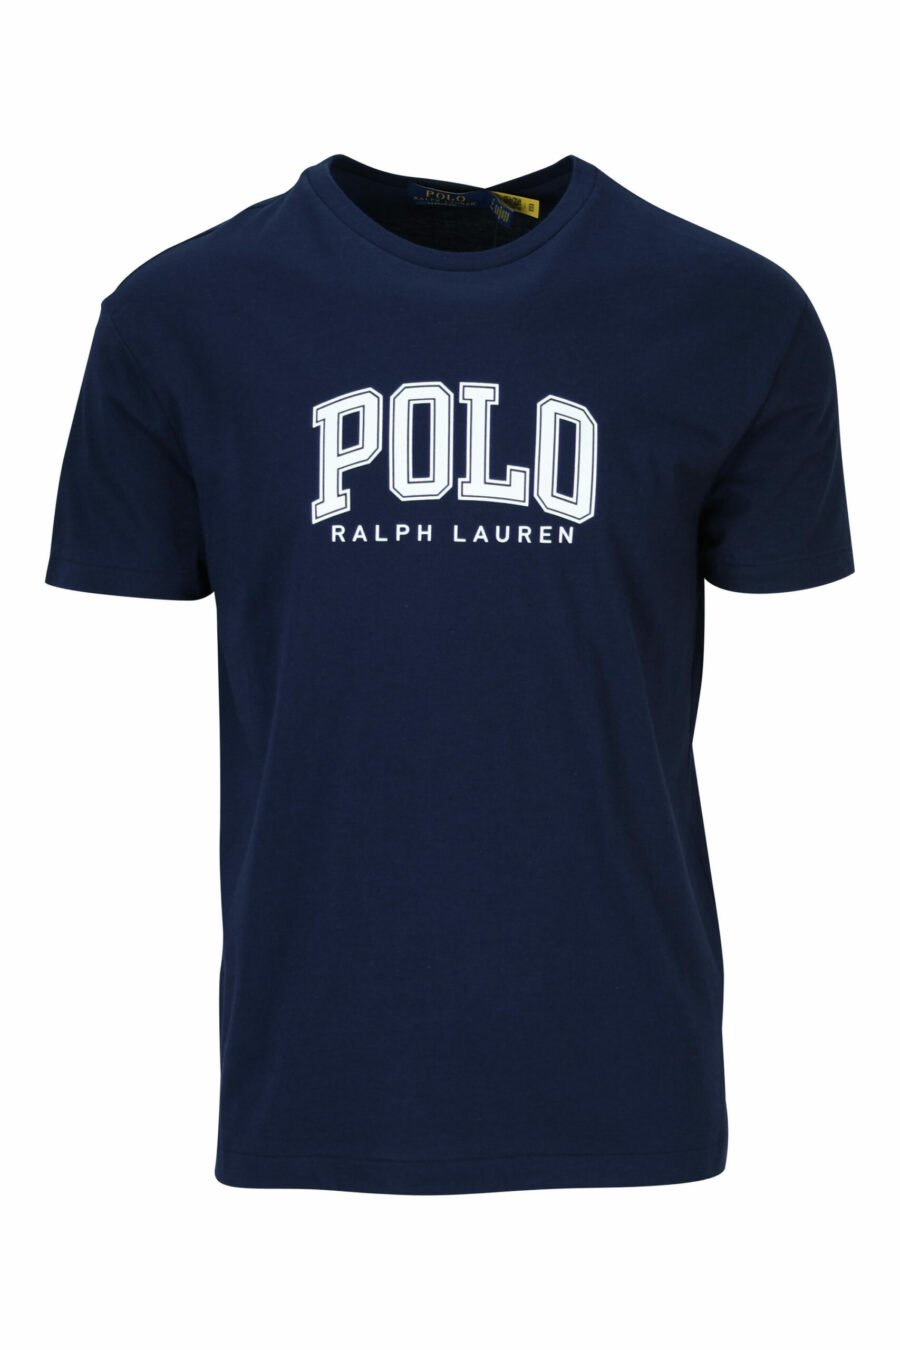 Tee-shirt bleu foncé avec maxilogo "polo" blanc - 3616535909311